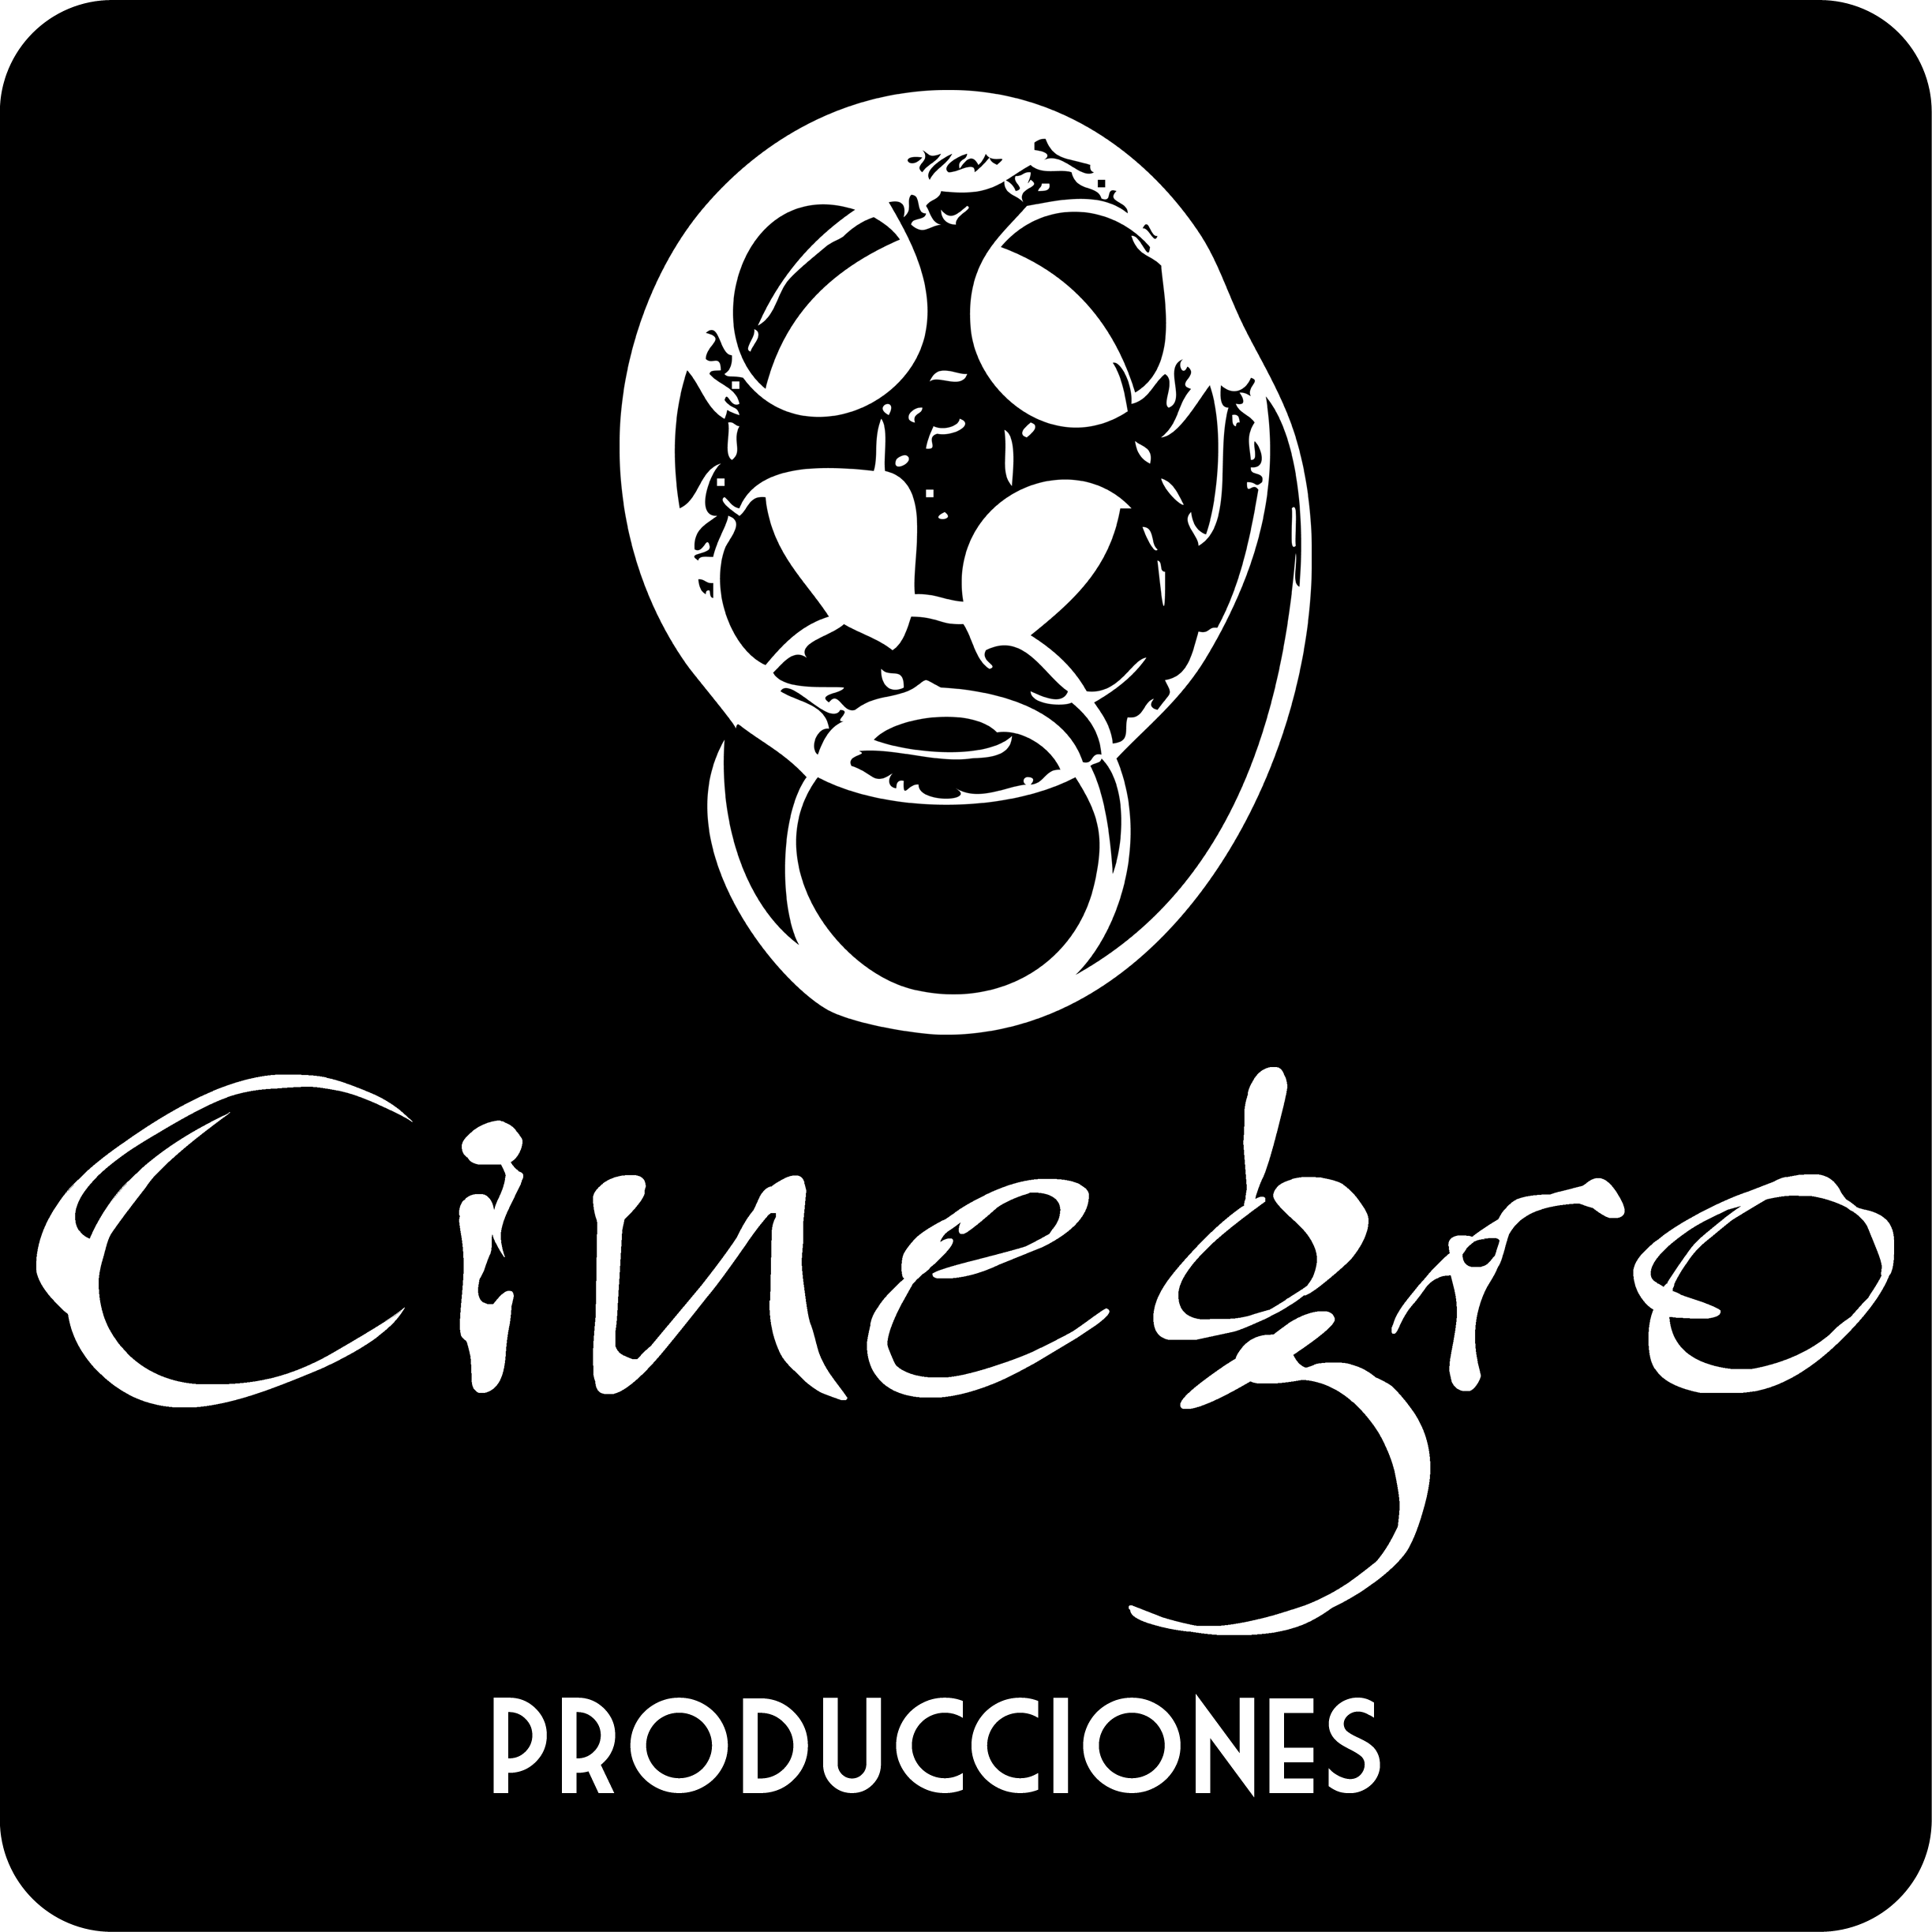 Produccion / Distribucion / Revistas / CinegroTV